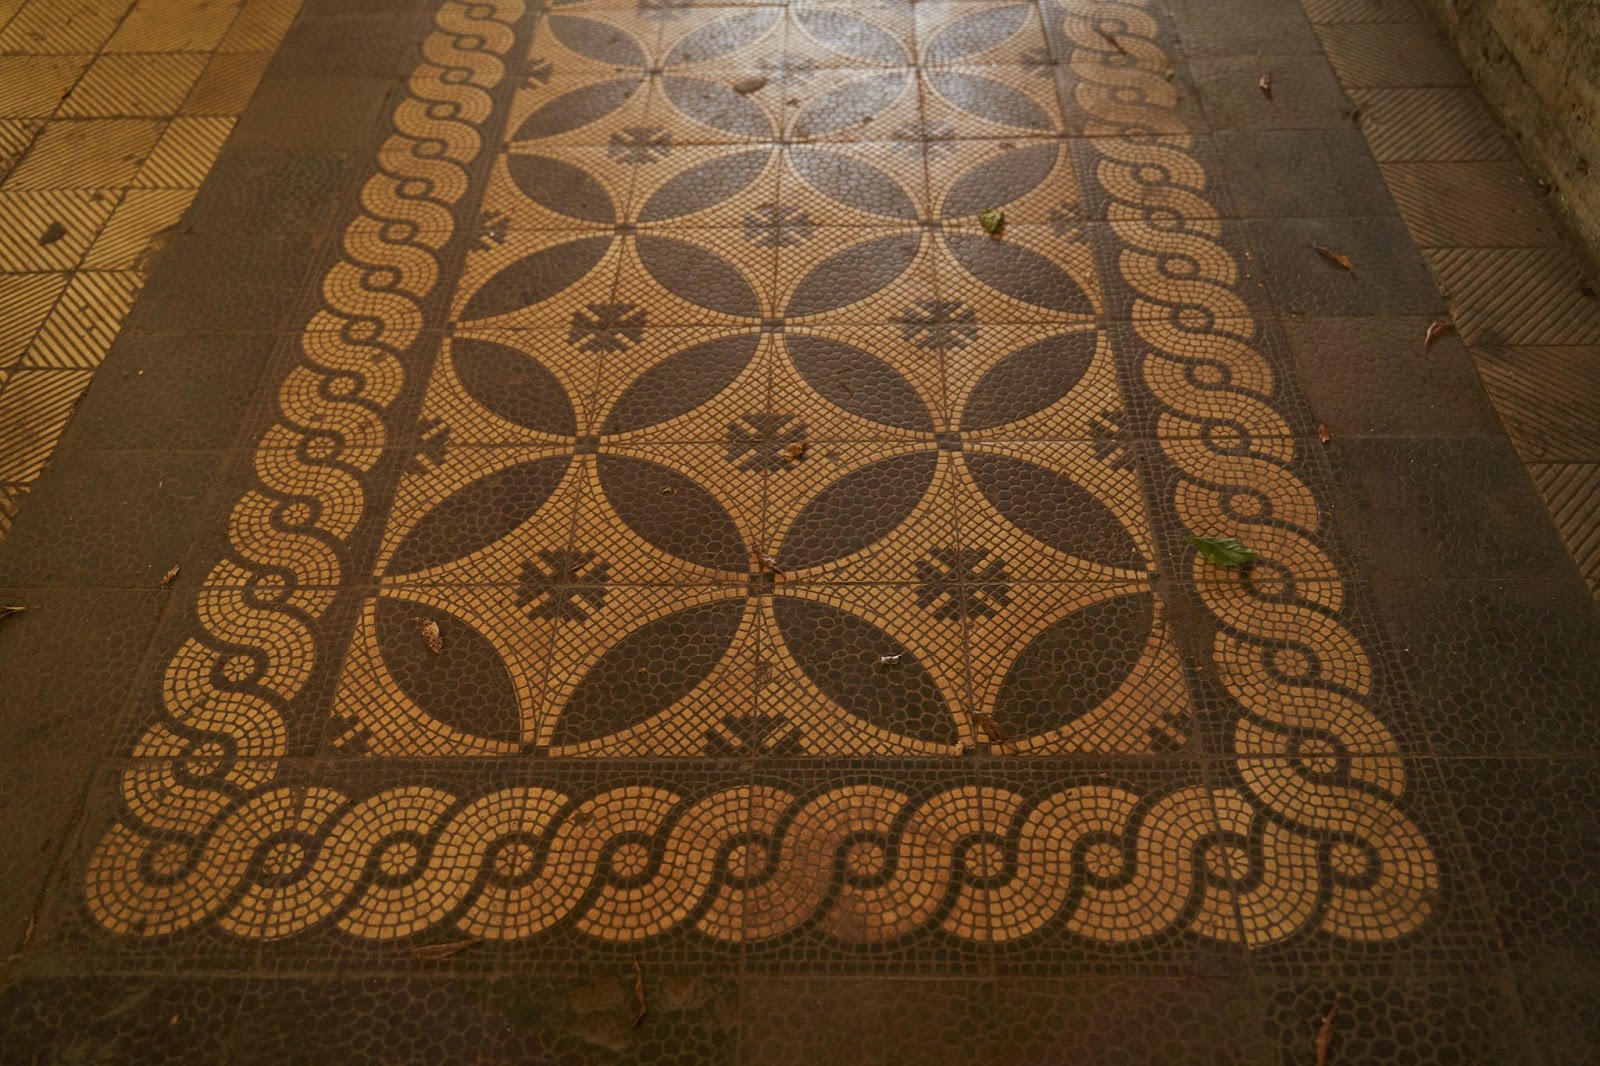 А на полу пешеходных проходов до сих пор лежит мозаичная плитка с орнаментом